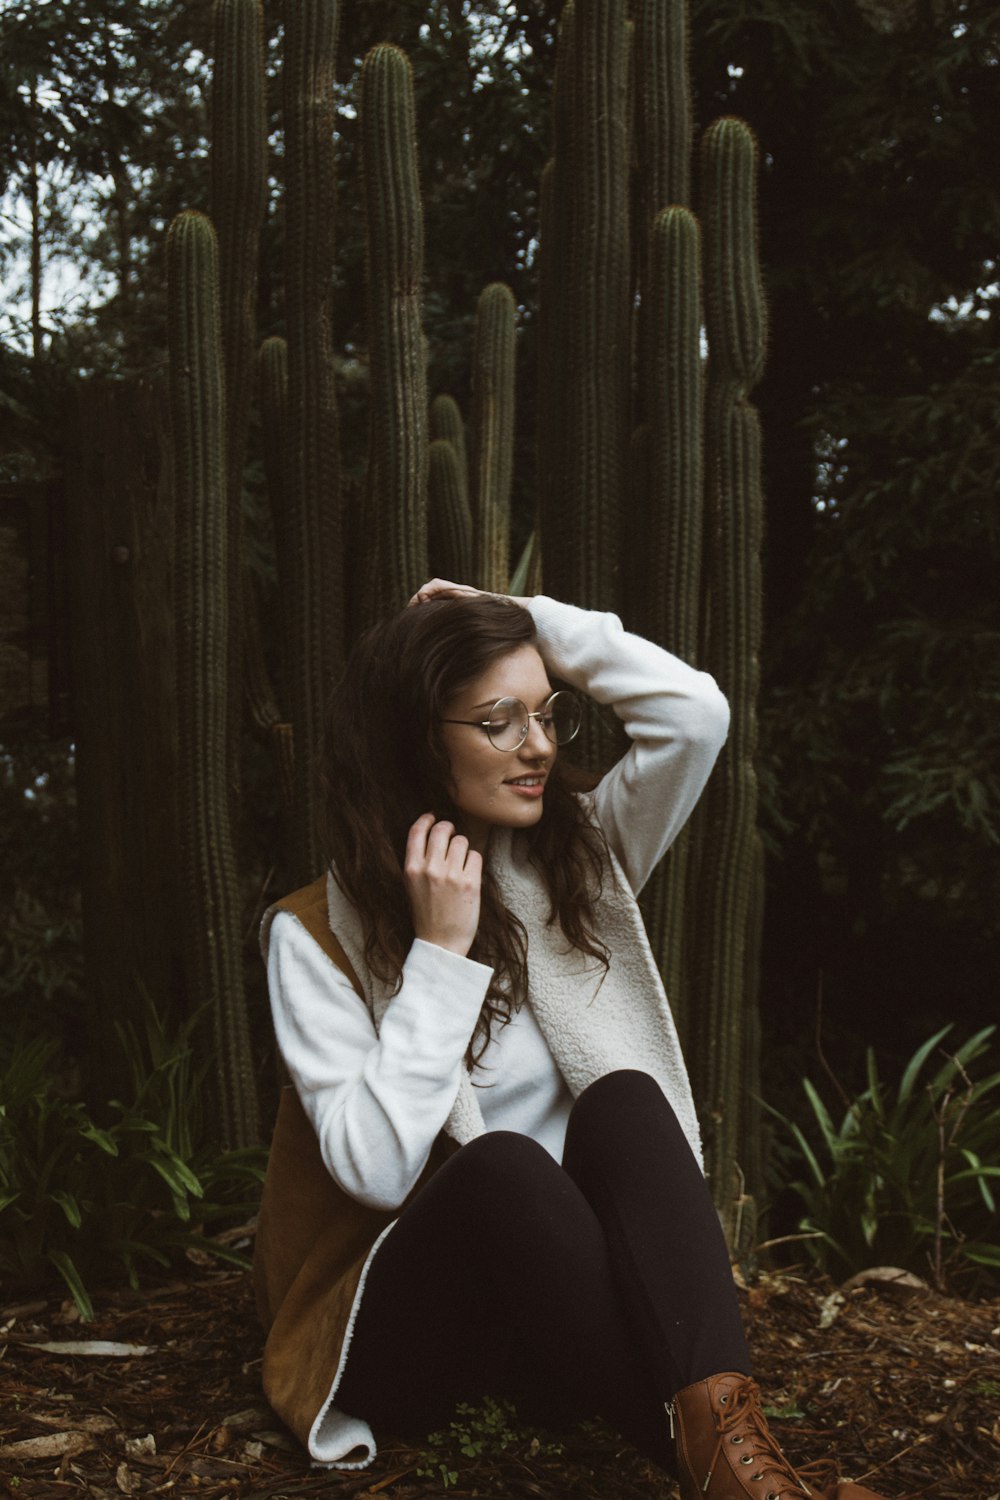 mulher sorridente vestindo casaco marrom e branco sentado ao lado de plantas de cactos verdes